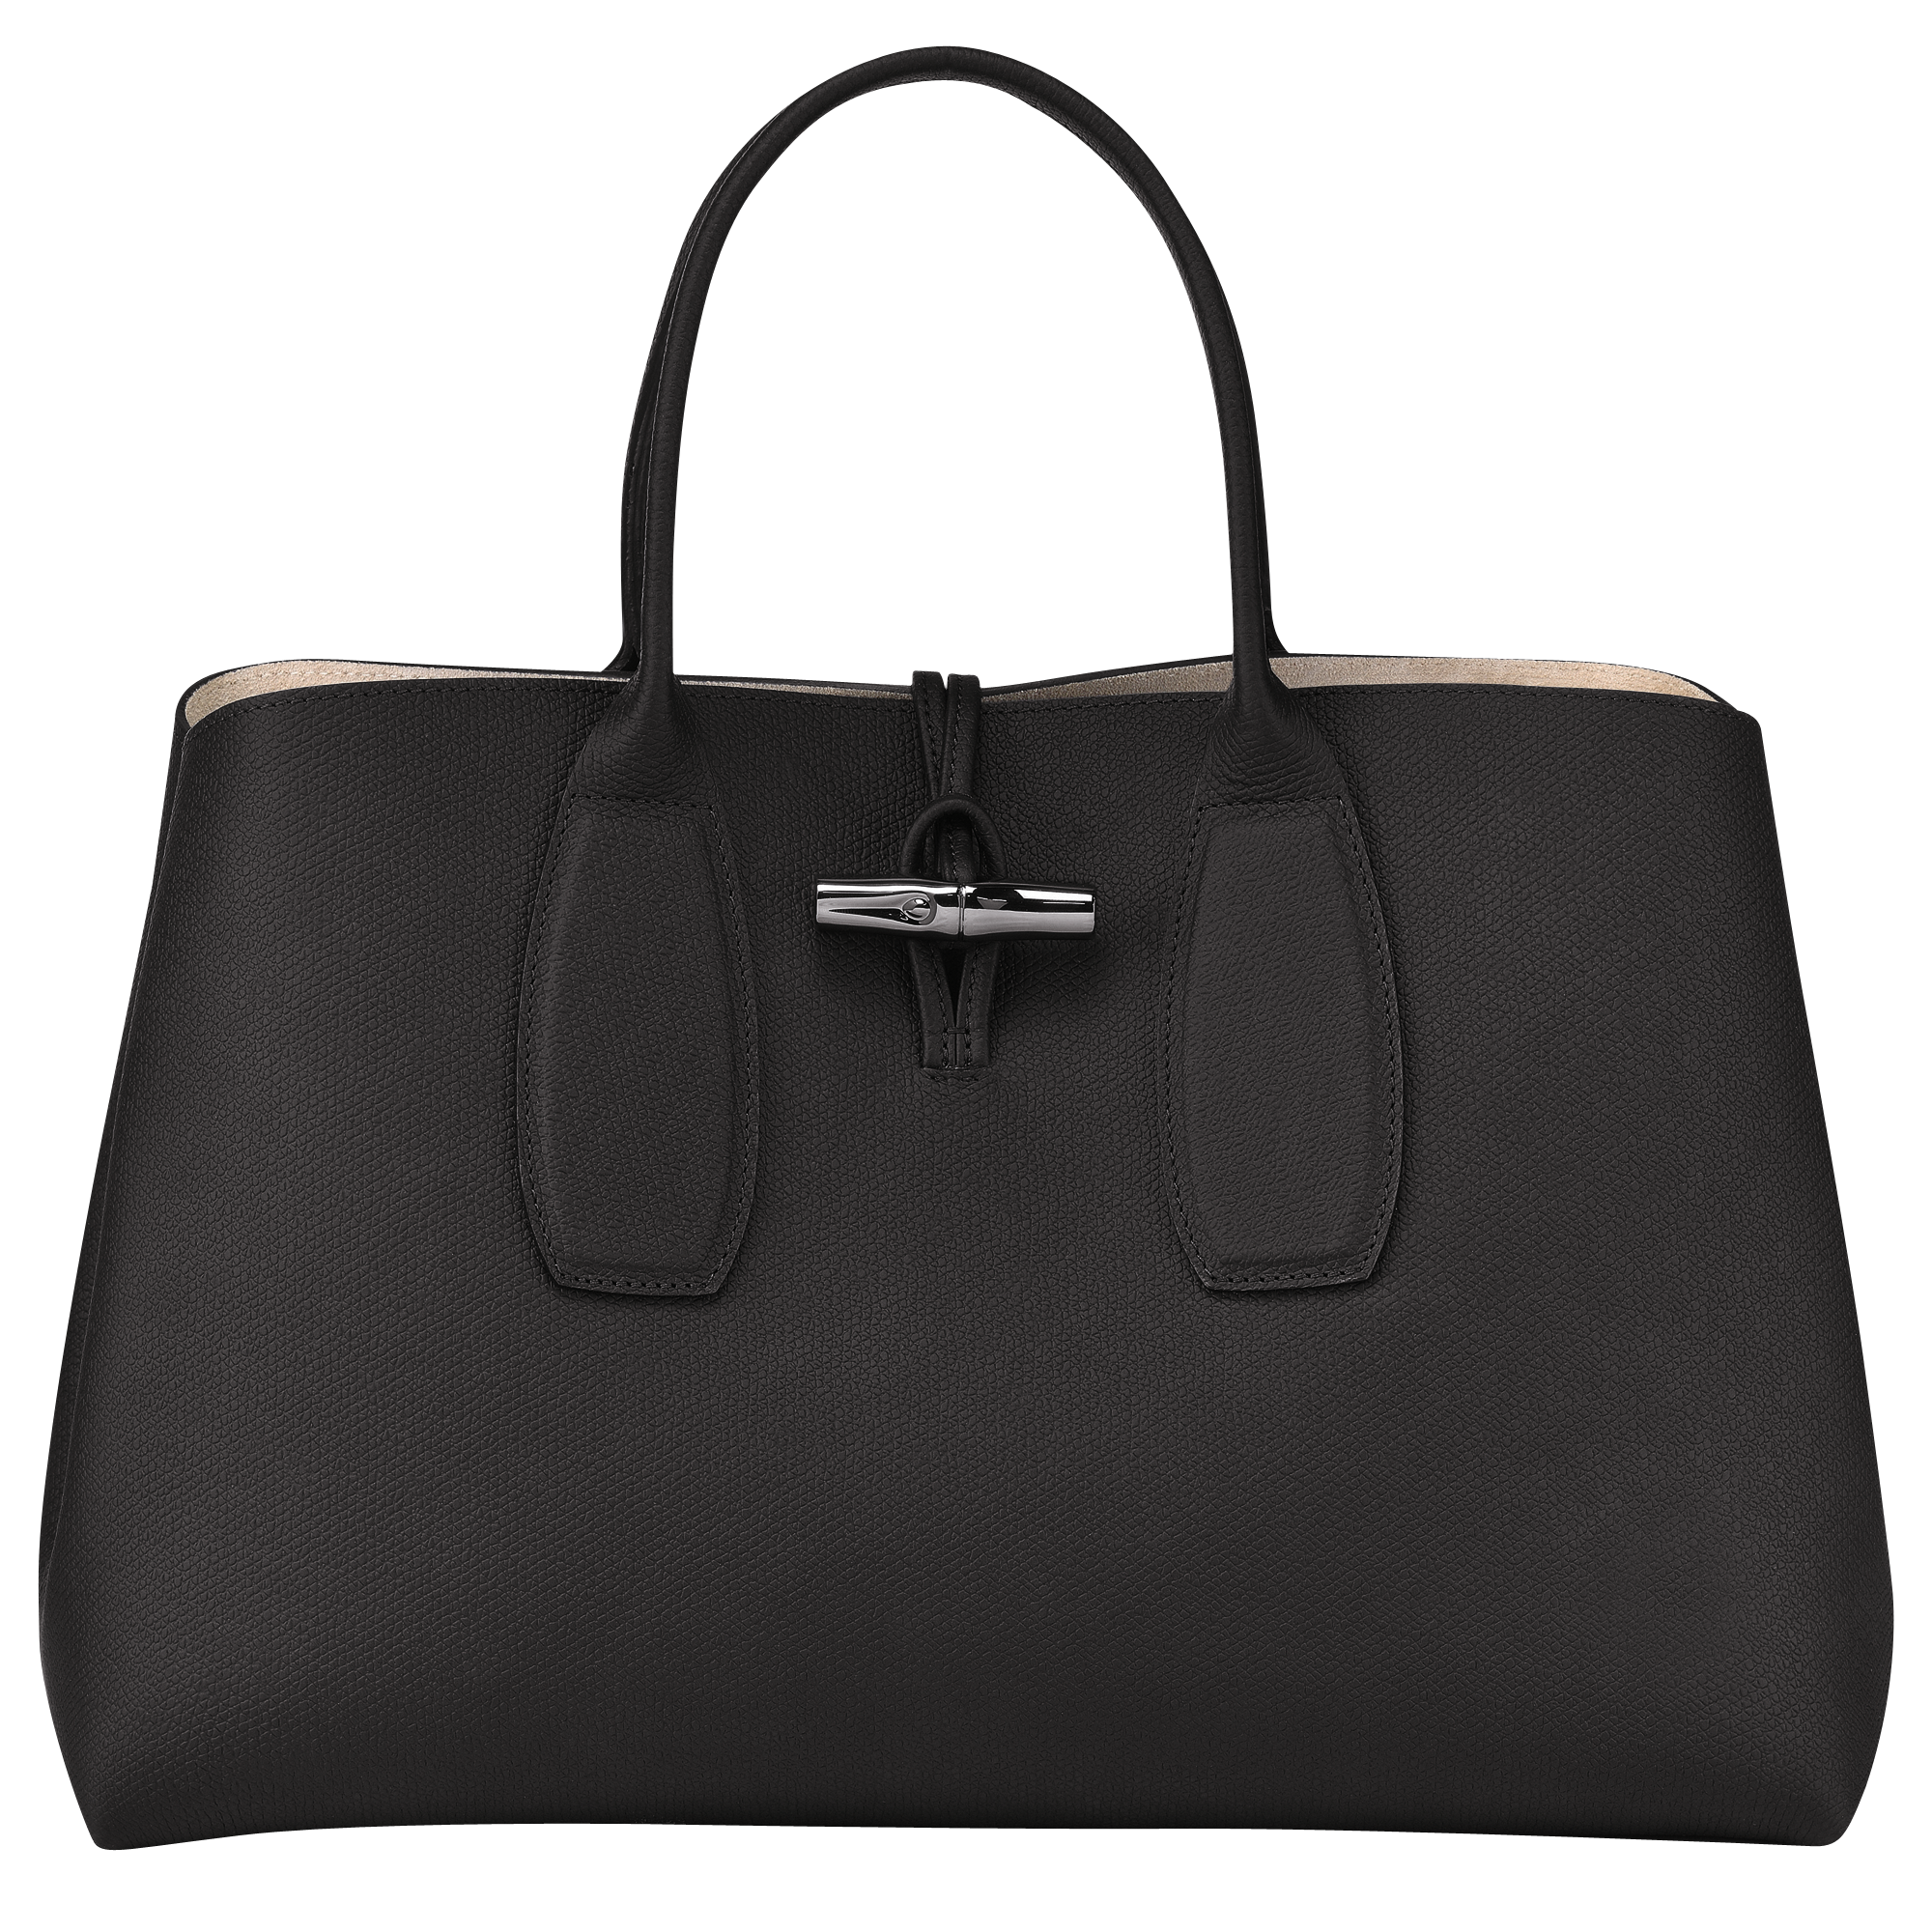 30代女性におすすめな人気の通勤バッグは、LONGCHAMPのロゾ XL トップハンドルバッグ